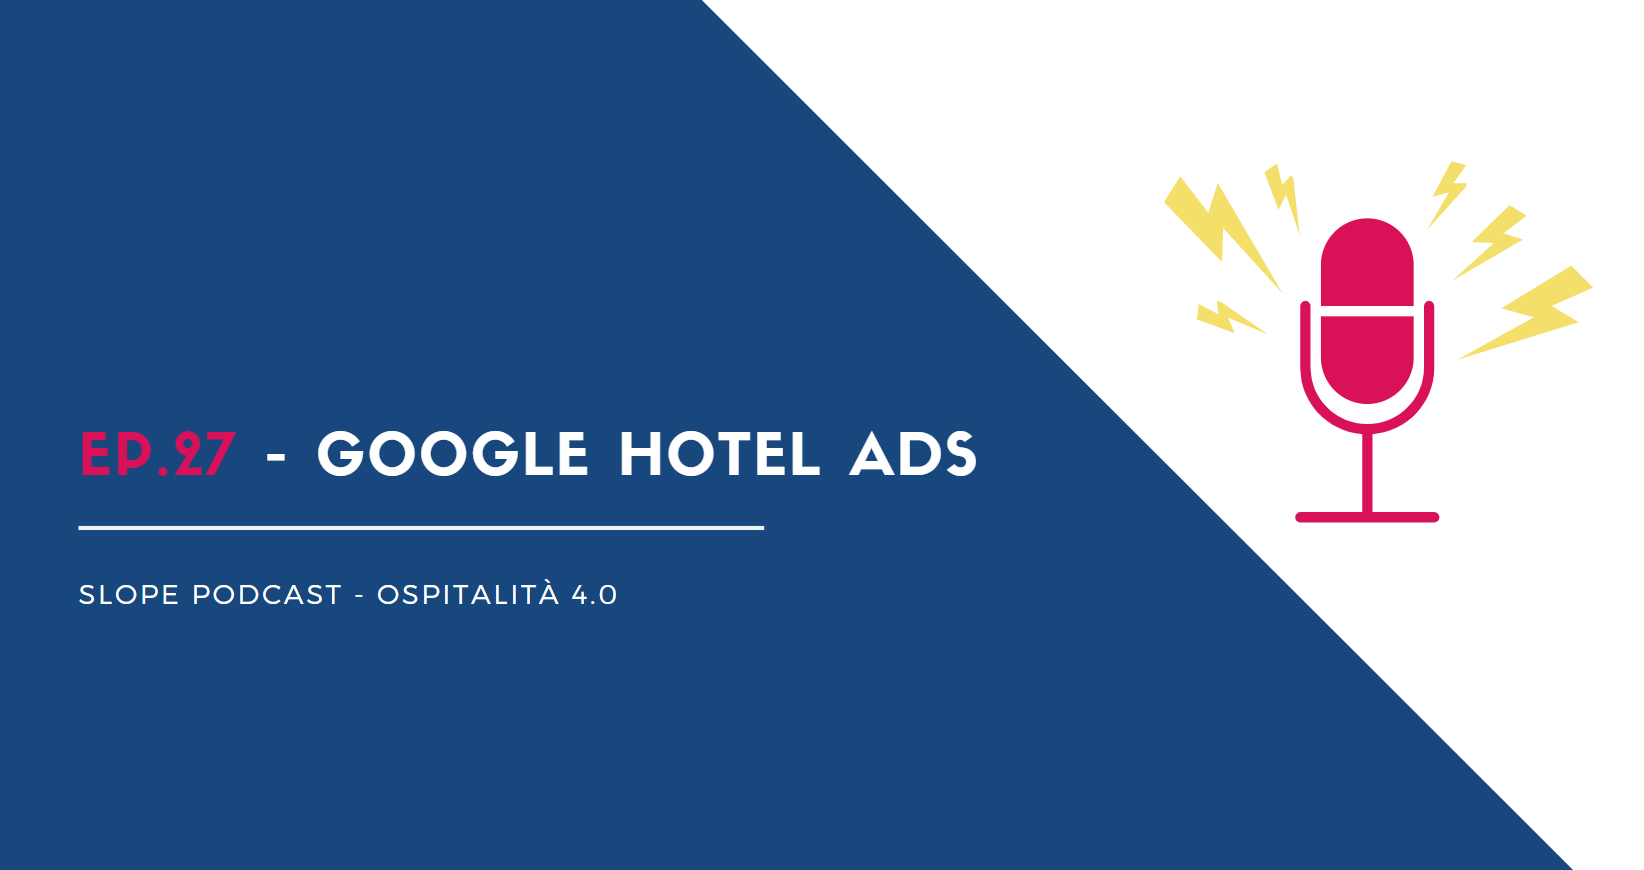 Google Hotel Ads gestione prenotazioni Slope booking engine come funziona